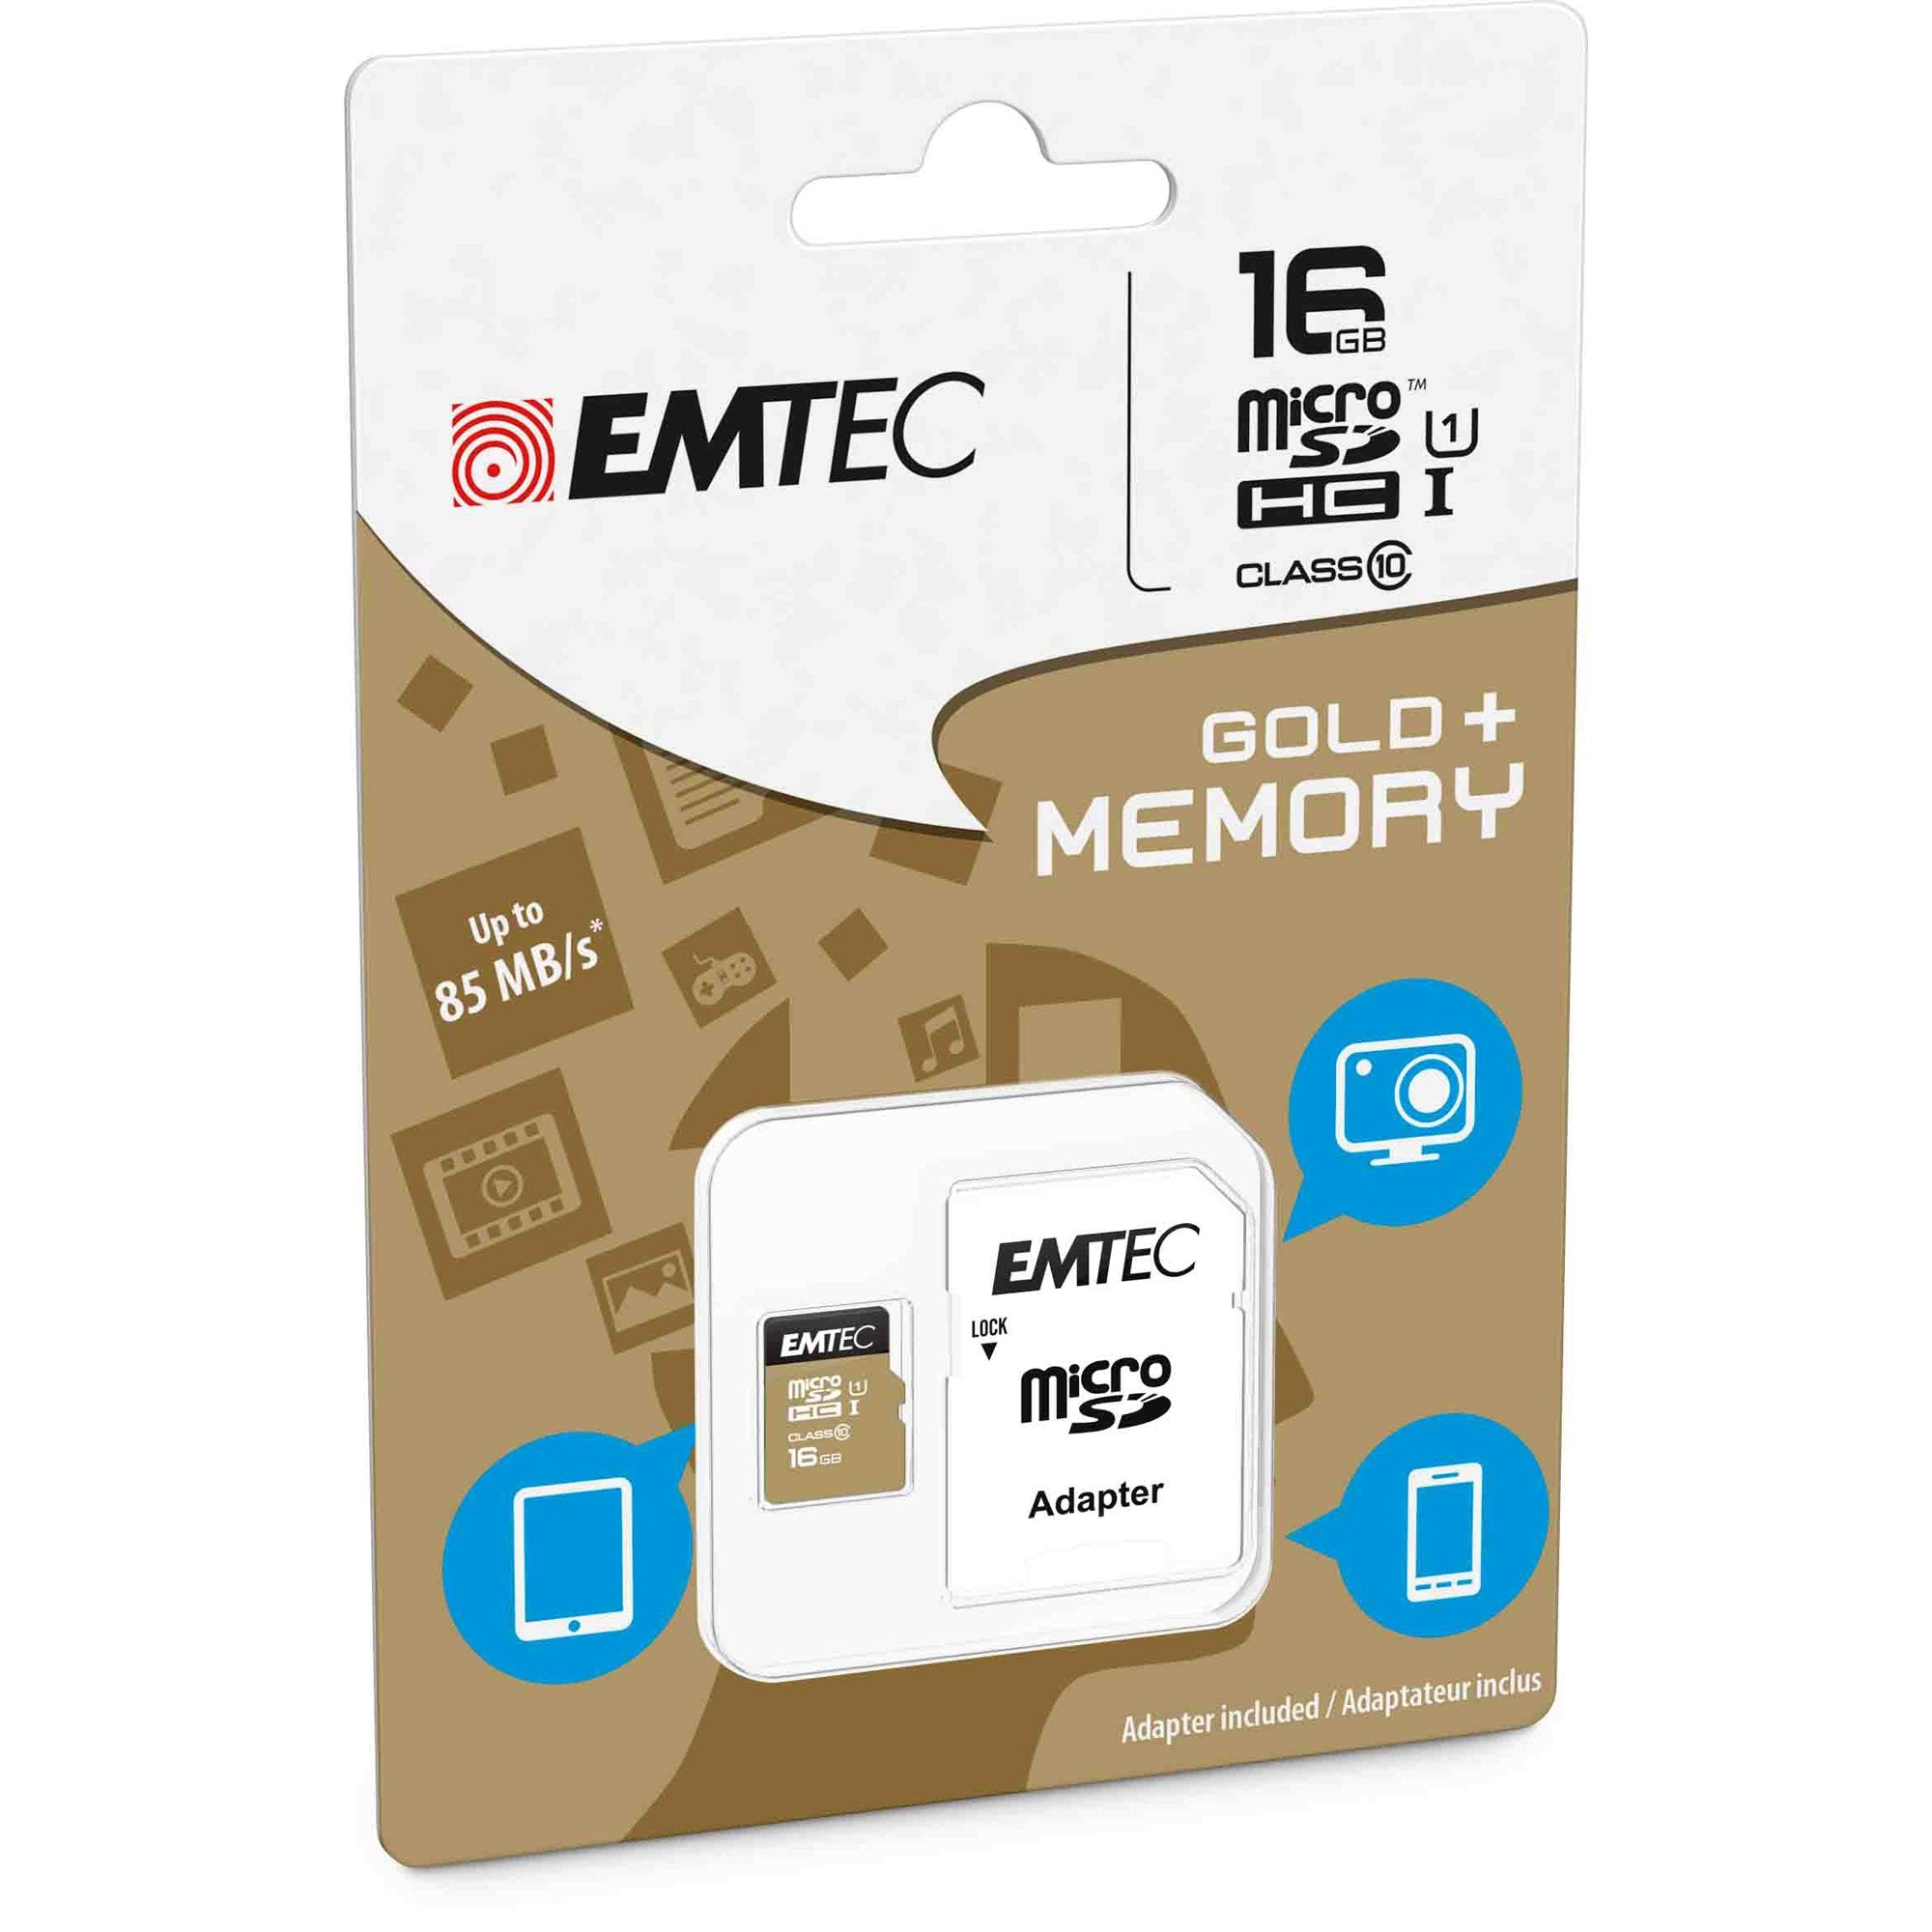 emtec-micro-sdhc-16gb-class-10-gold-plus-adattatore